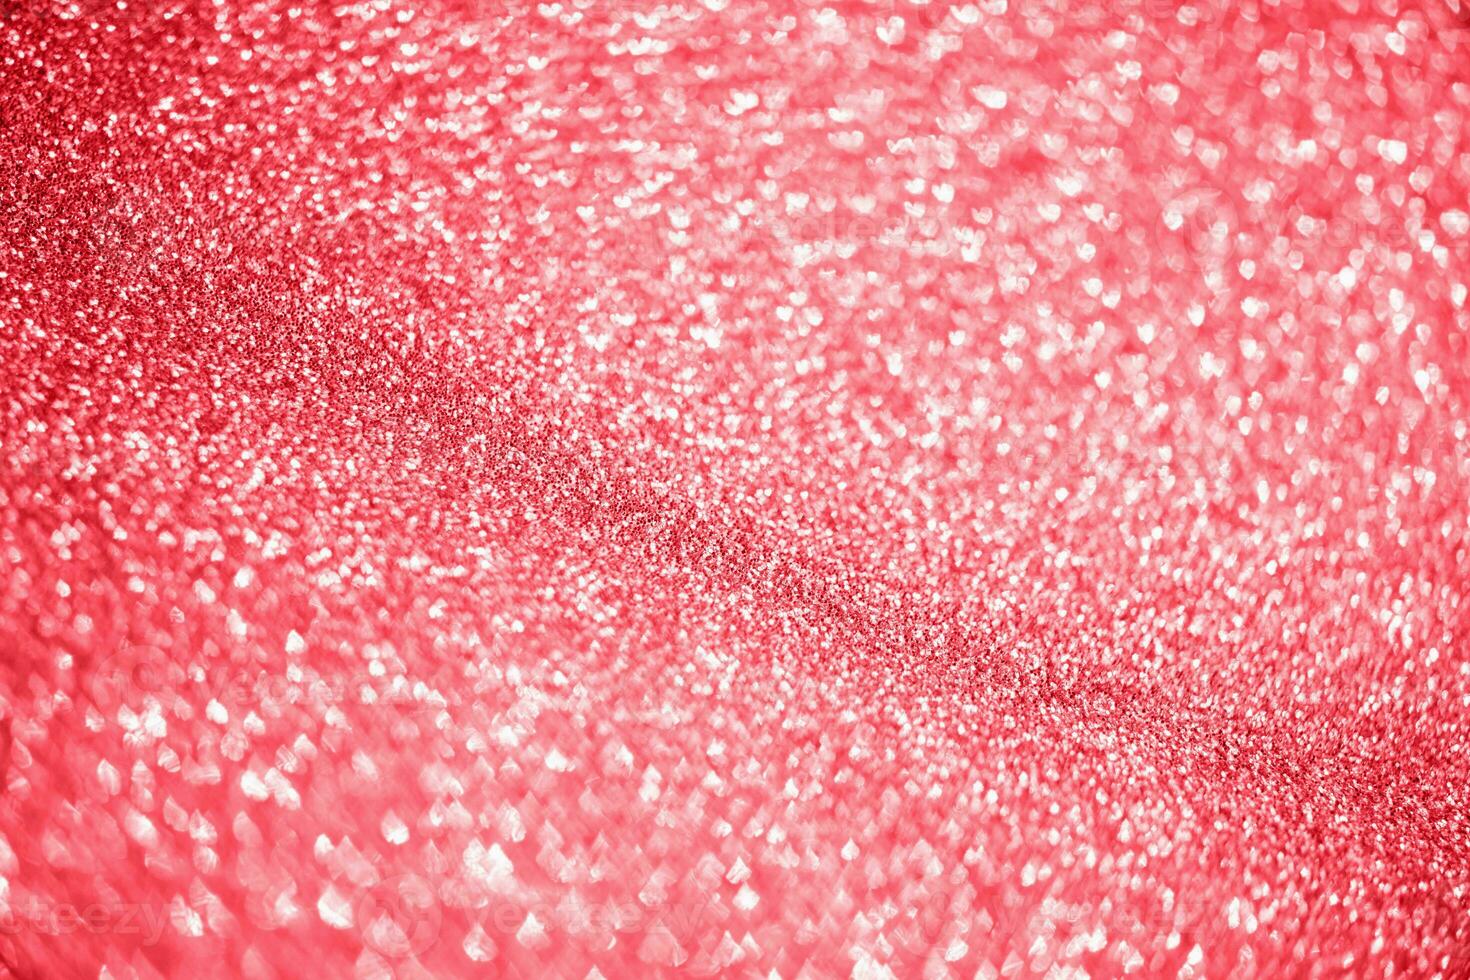 abstract rood schitteren fonkeling met hart bokeh licht voor valentijnsdag achtergrond foto